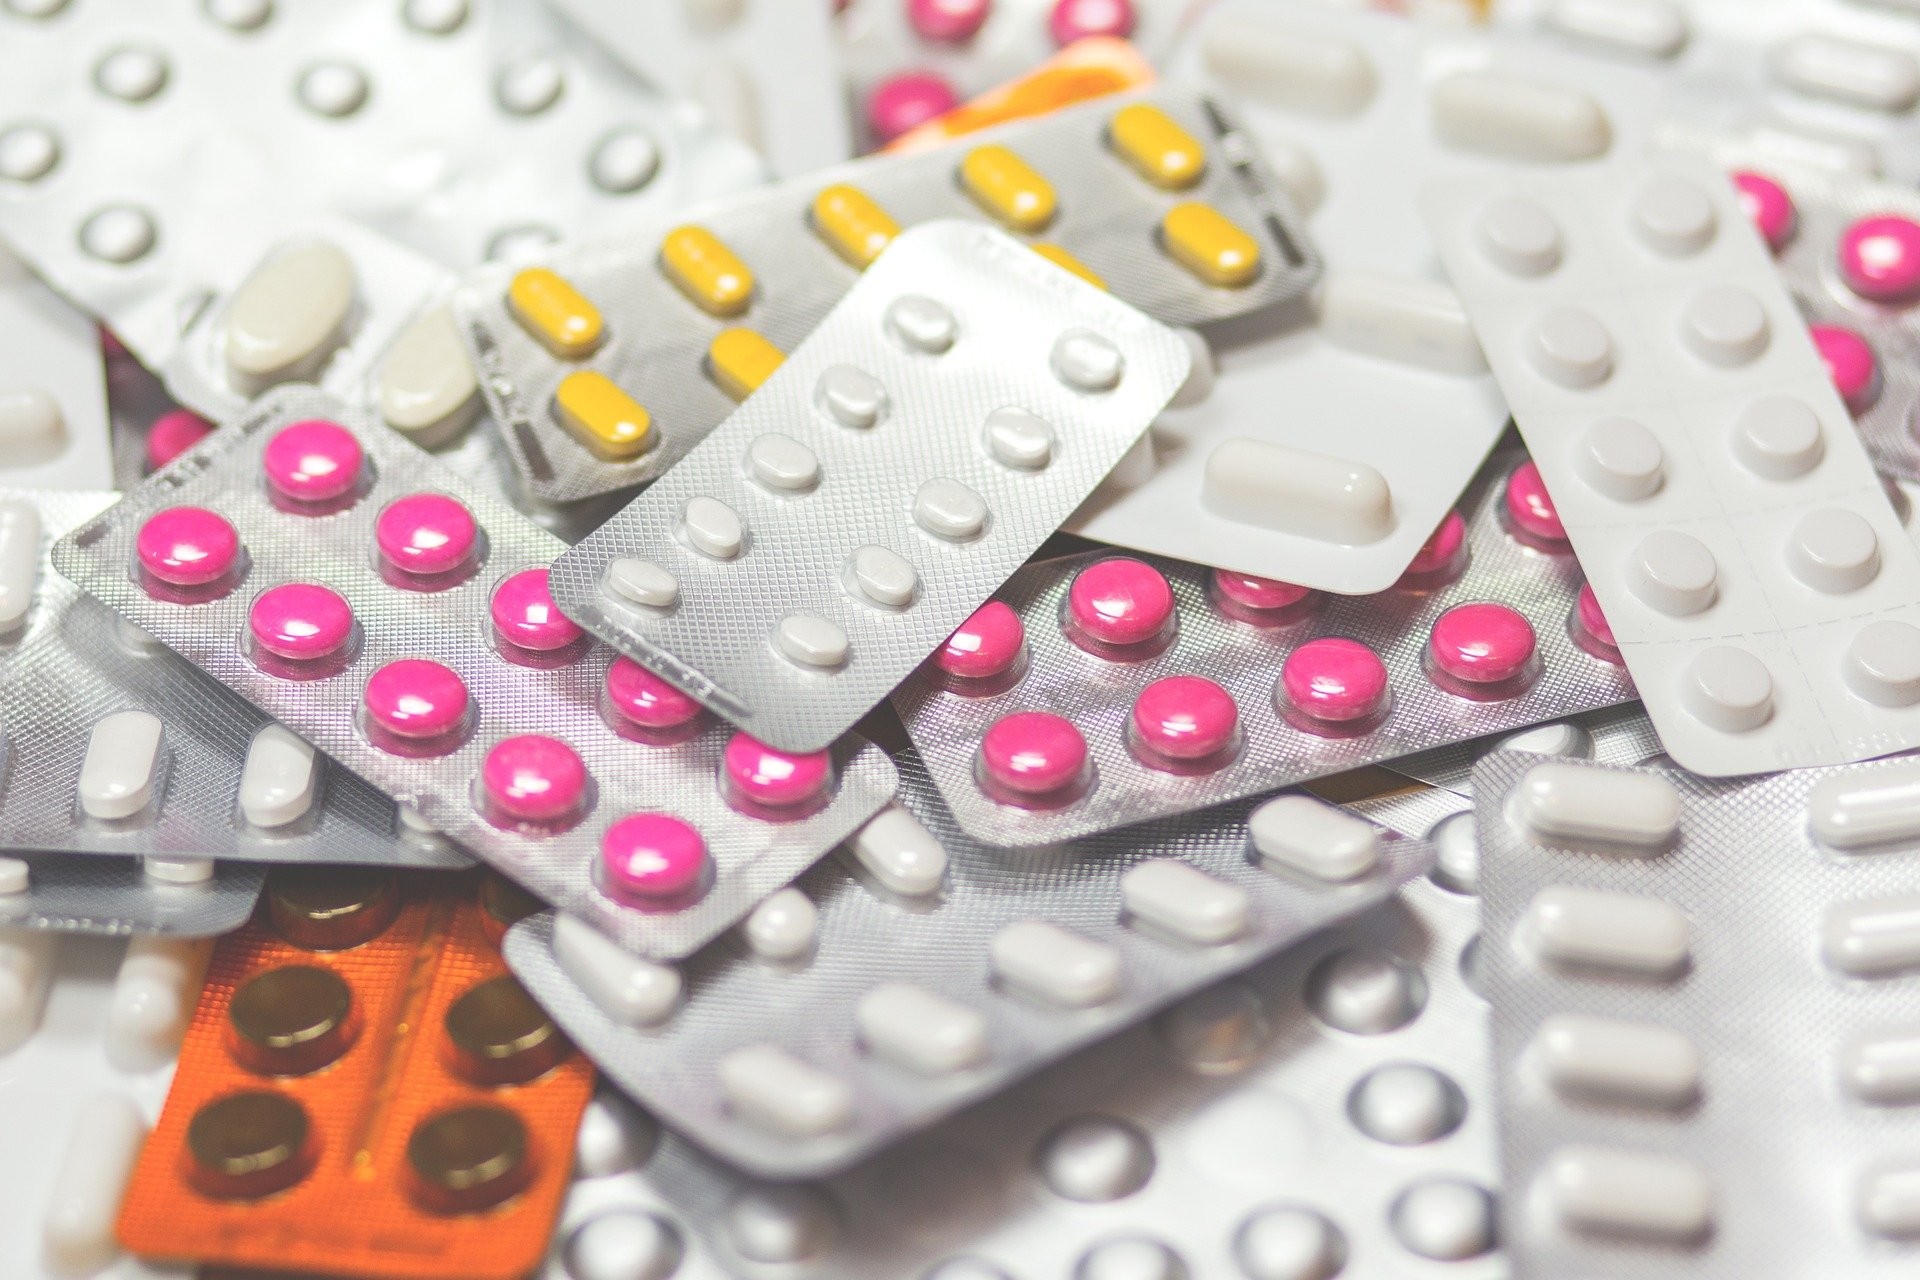 Ibuprofeno e coronavírus: o que se sabe sobre essa relação? (Foto: Pixabay)